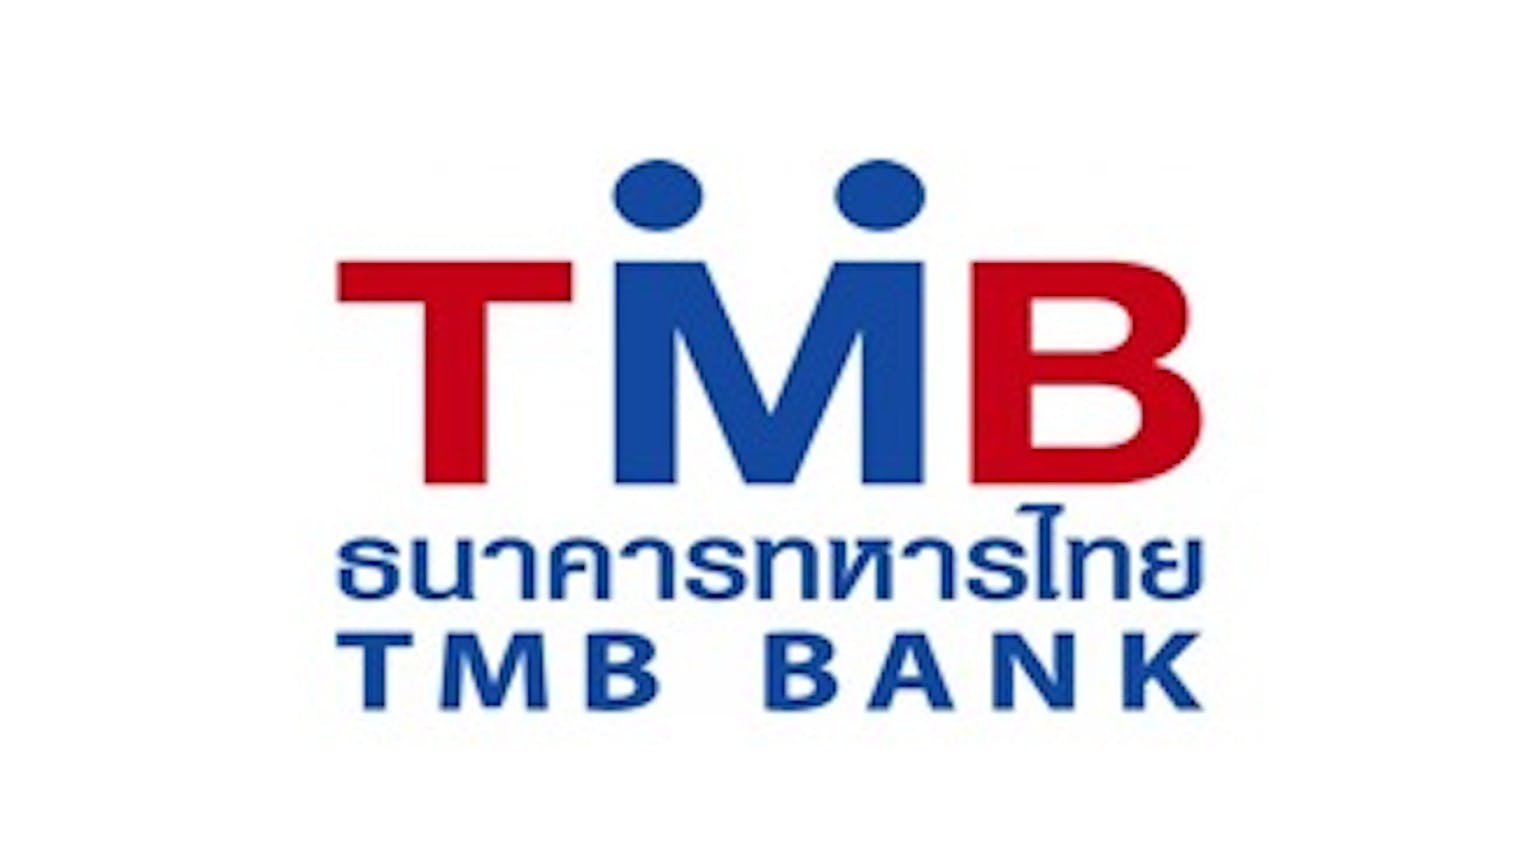 บัตรกดเงินสด TMB Ready Cash (บัตรกดเงินสด ทีเอ็มบี เรดดี้แคช)